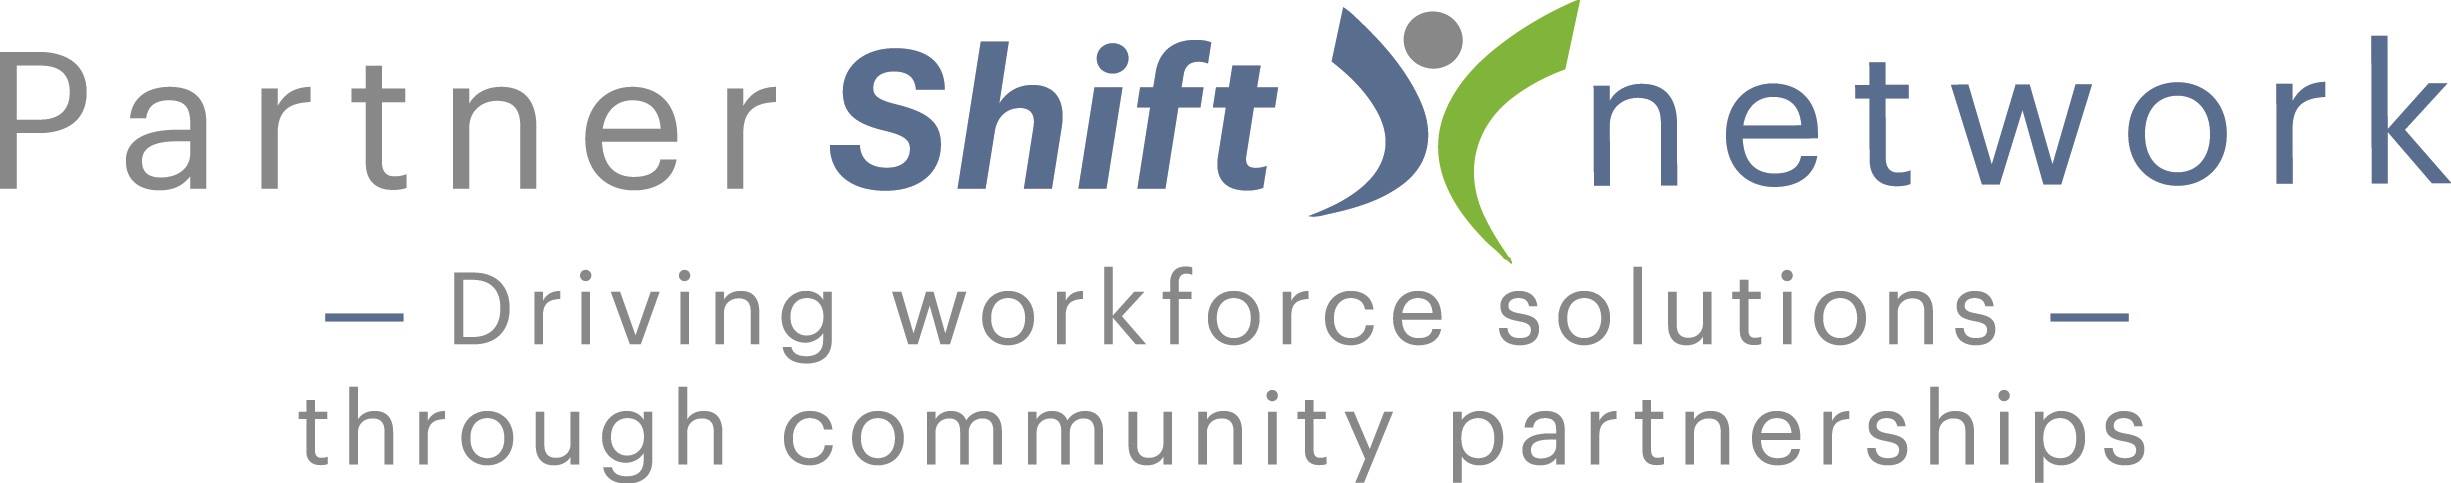 PartnerShift Network's Image